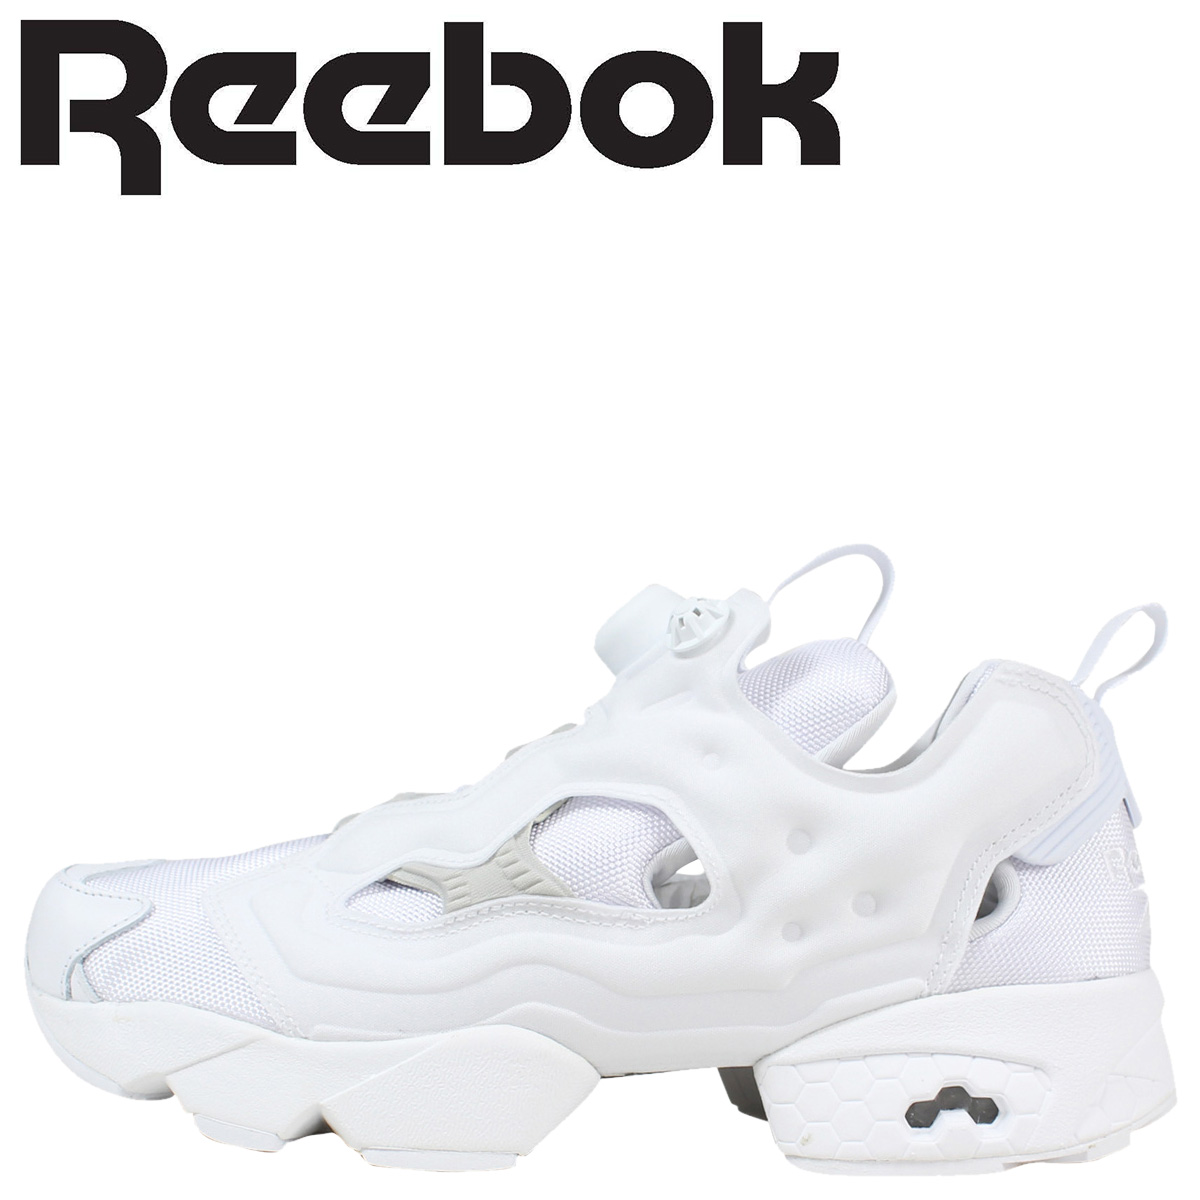 reebok shoes white